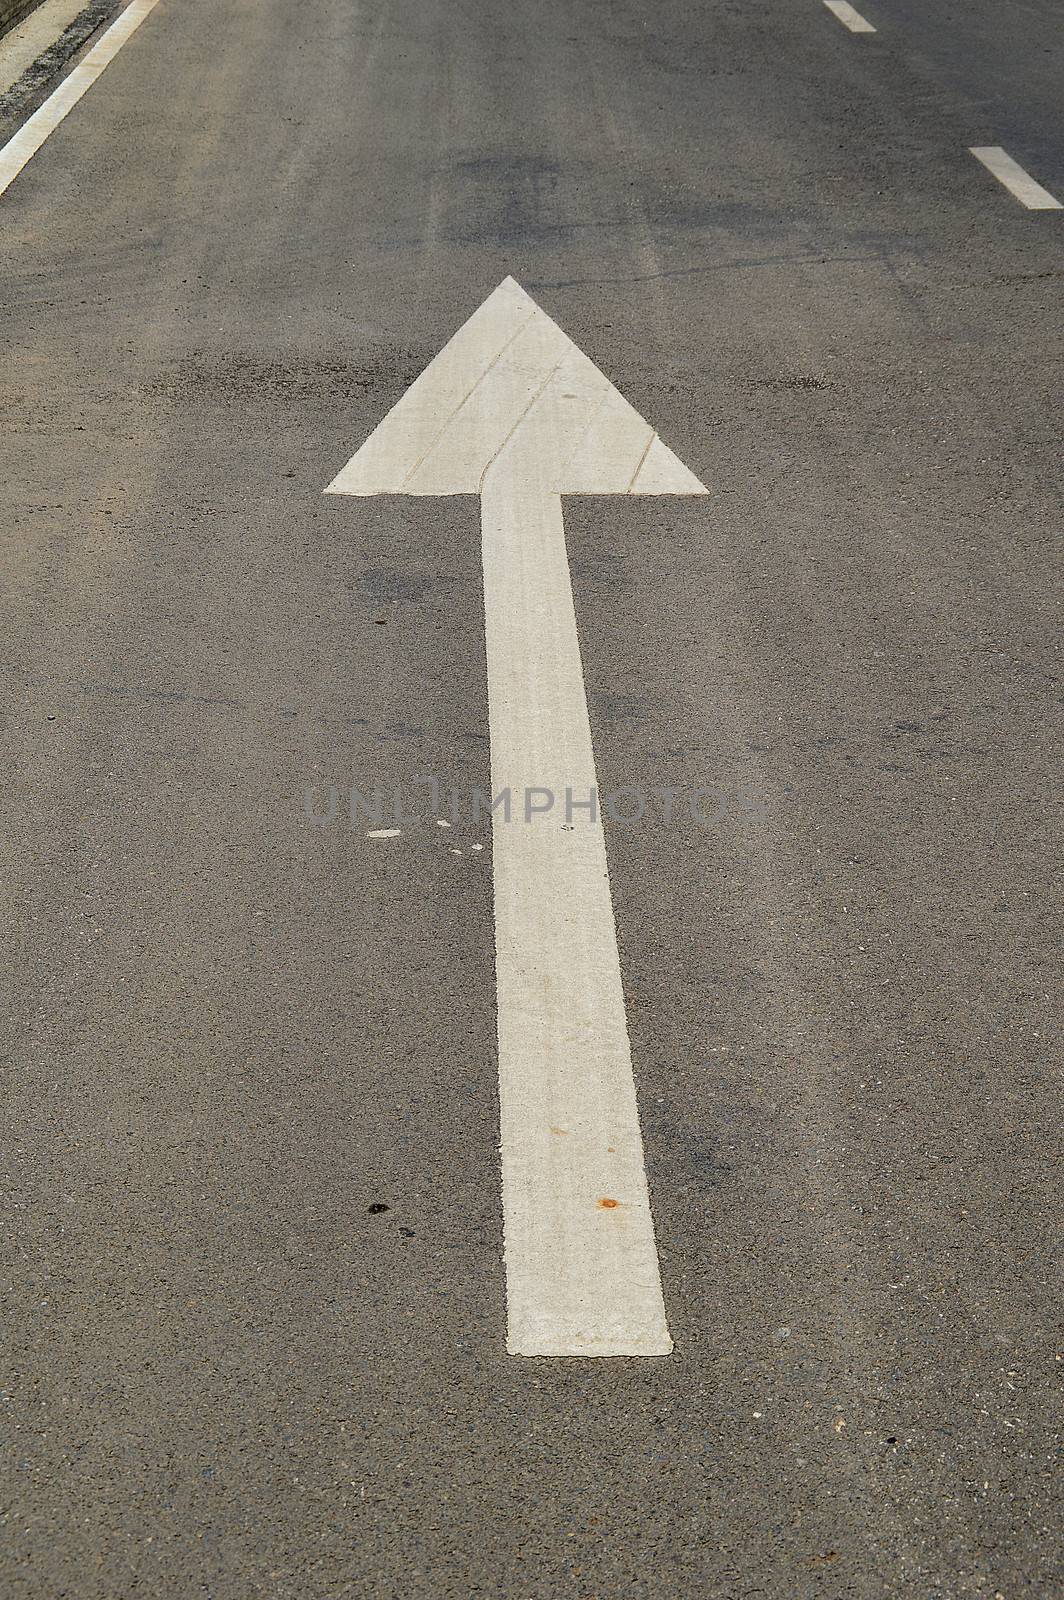 arrow signs on the asphalt road